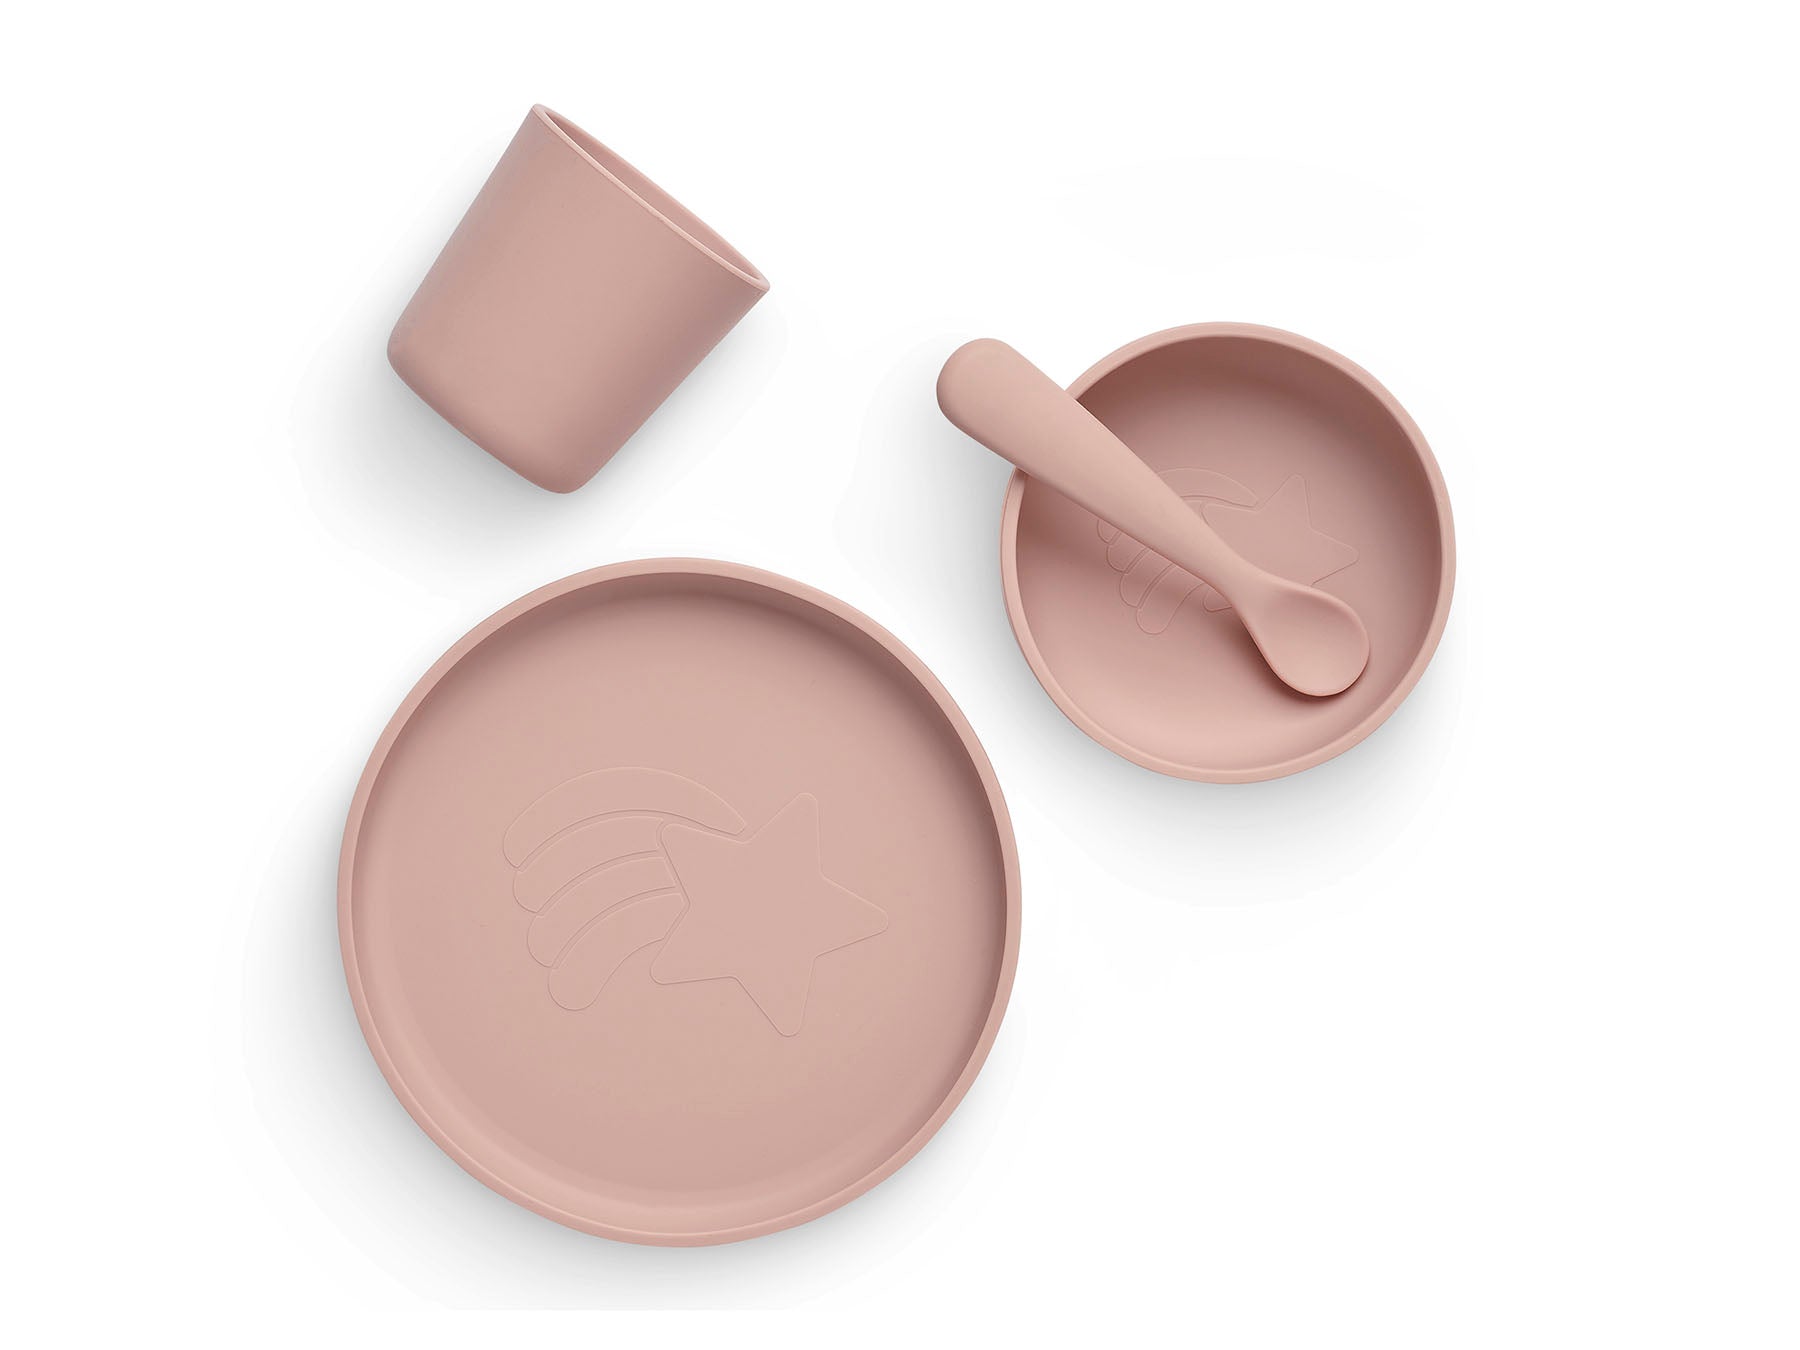 Kinder Geschirrset Silikon - Pale Pink - 4-teilig